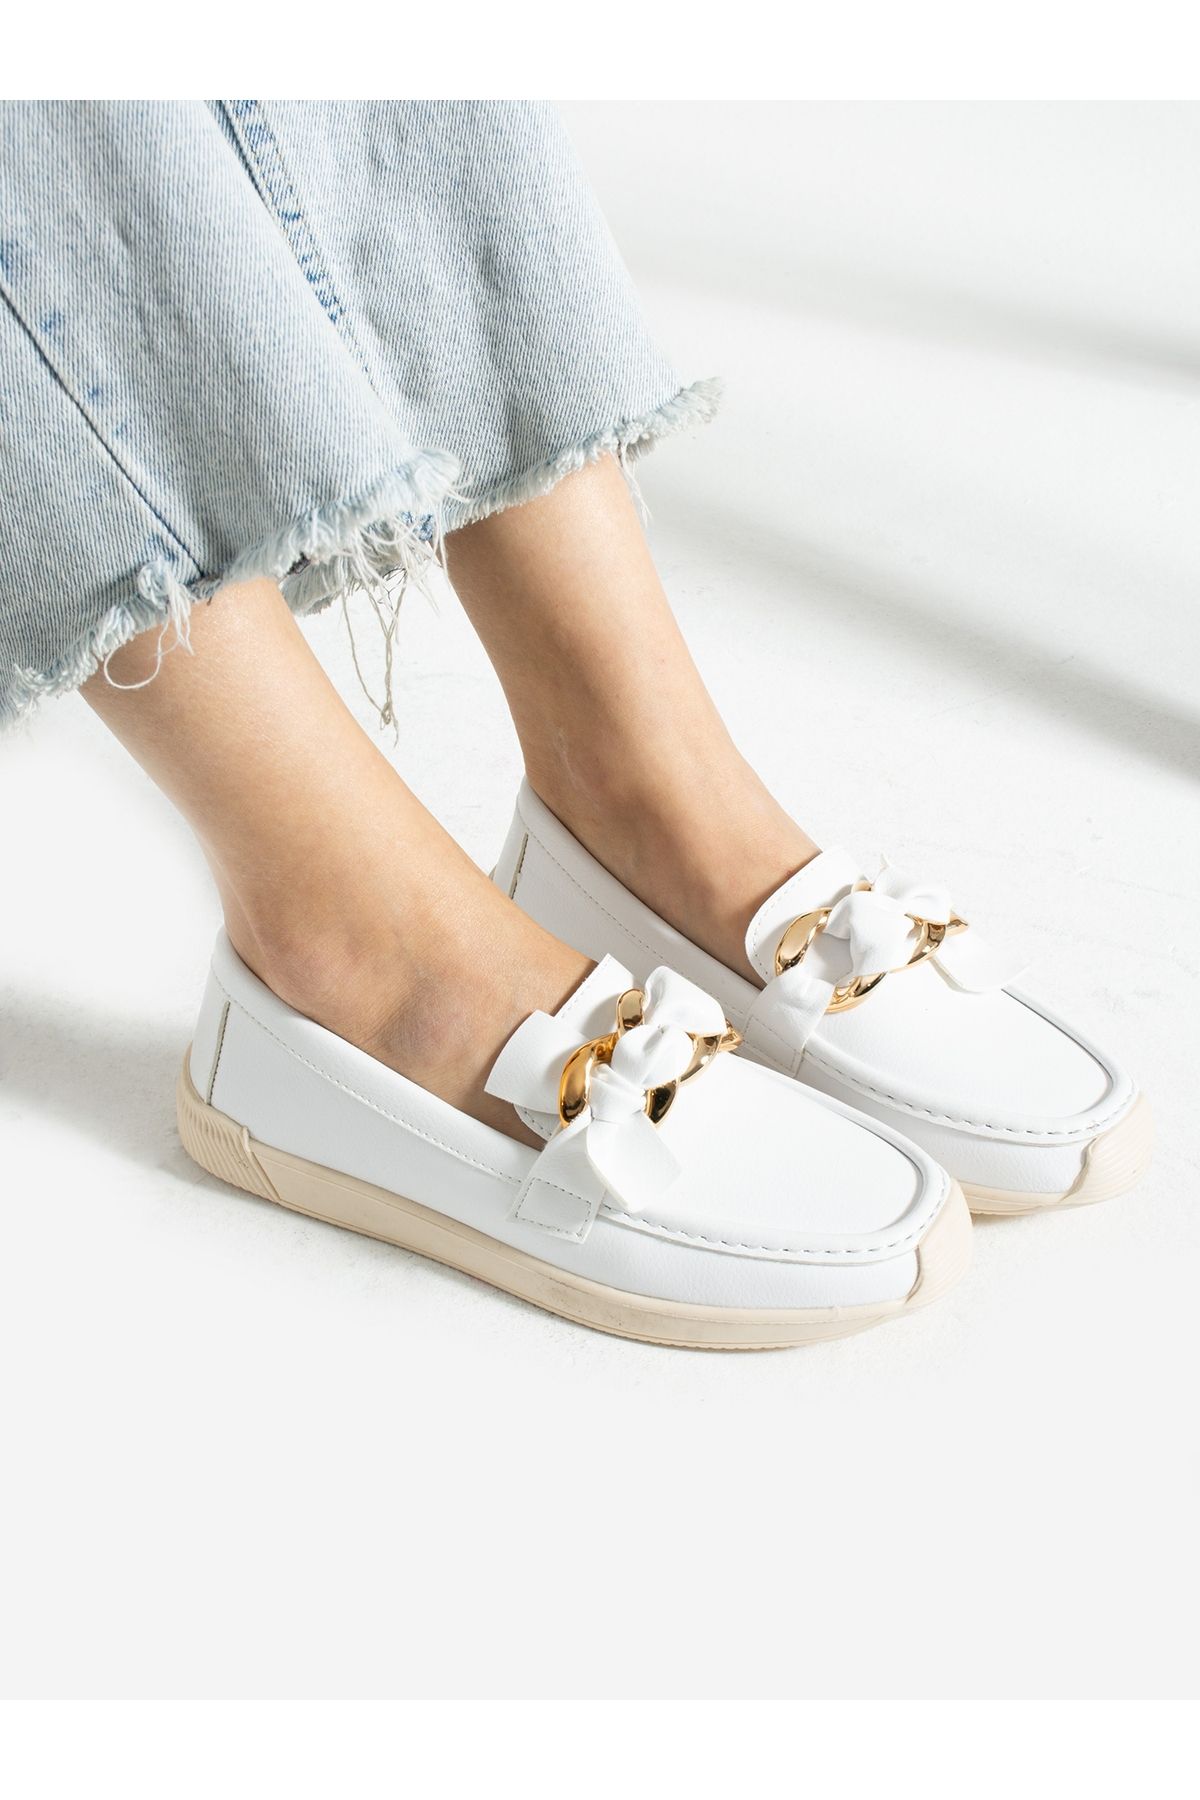 Alemdar Shoes Beyaz Toka Detay Kadın Loafer